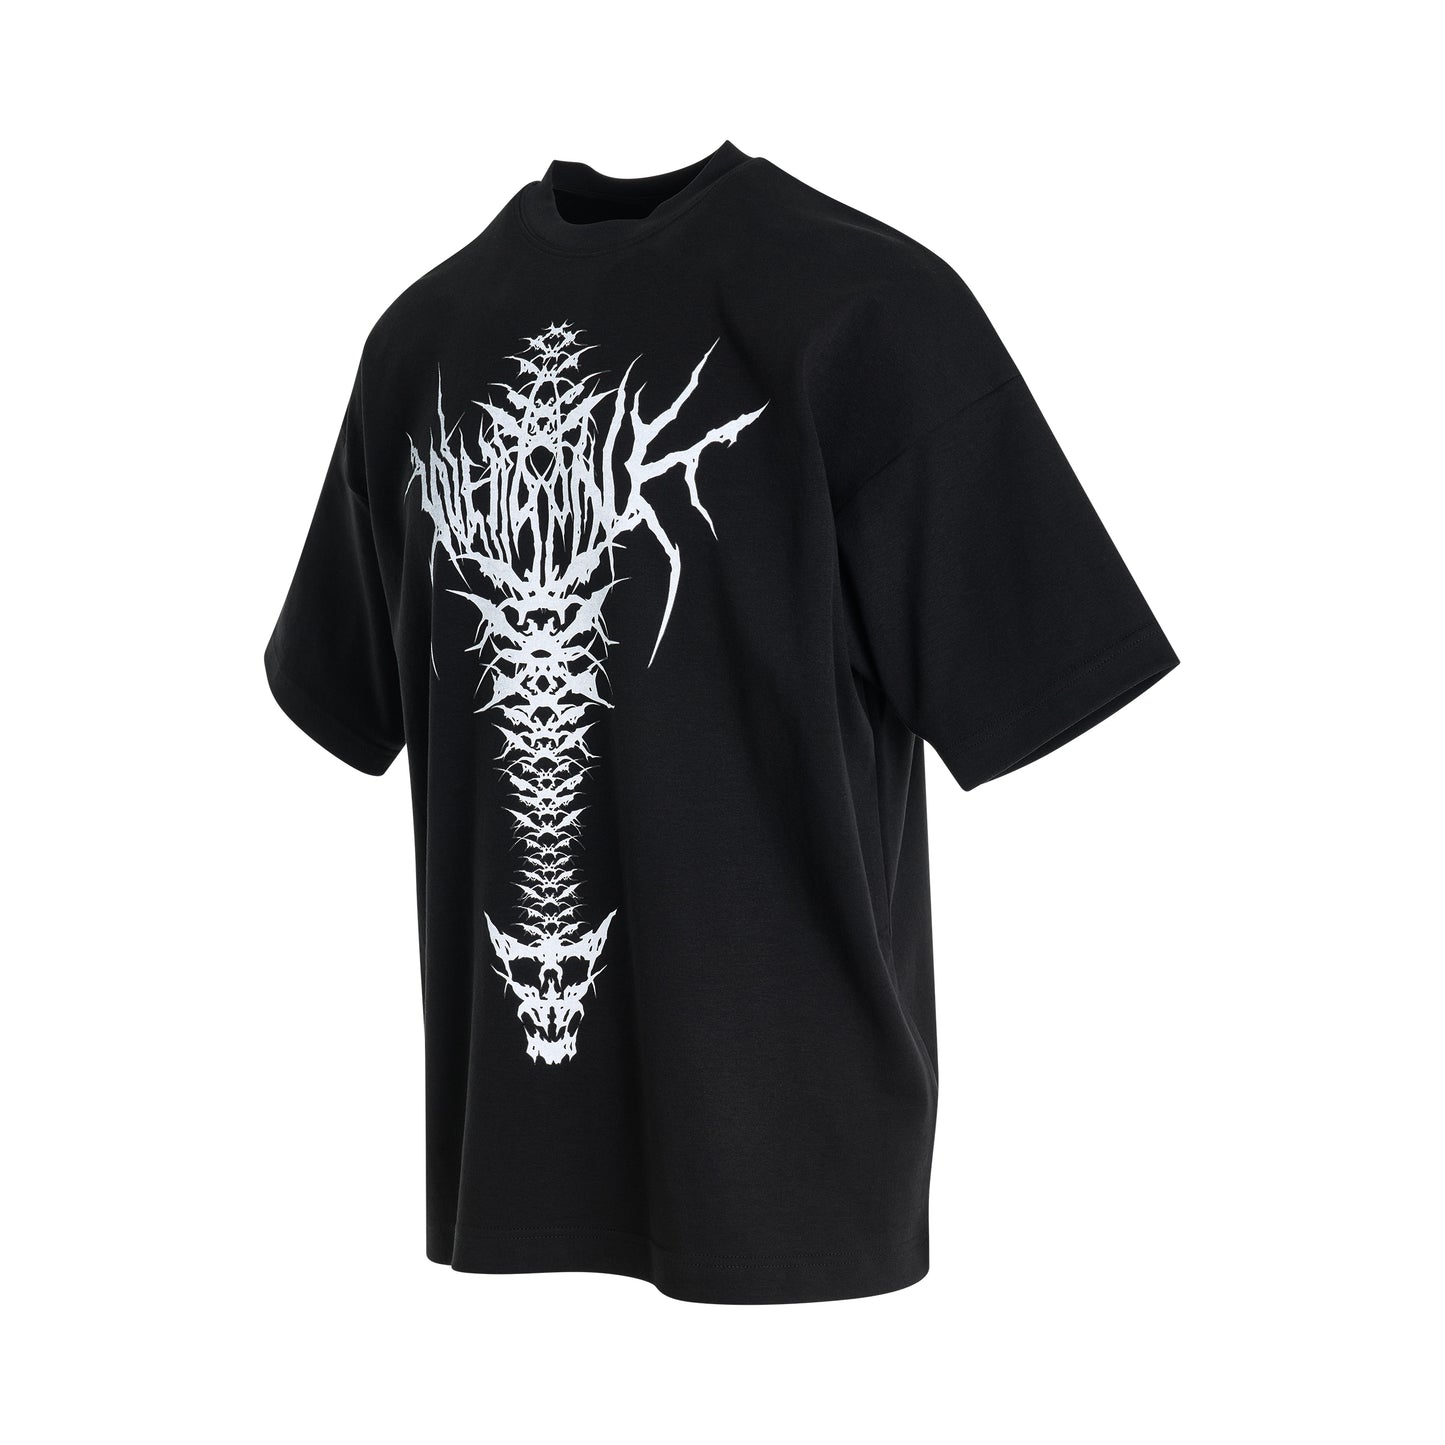 Spine Skull Print T-Shirt in Black